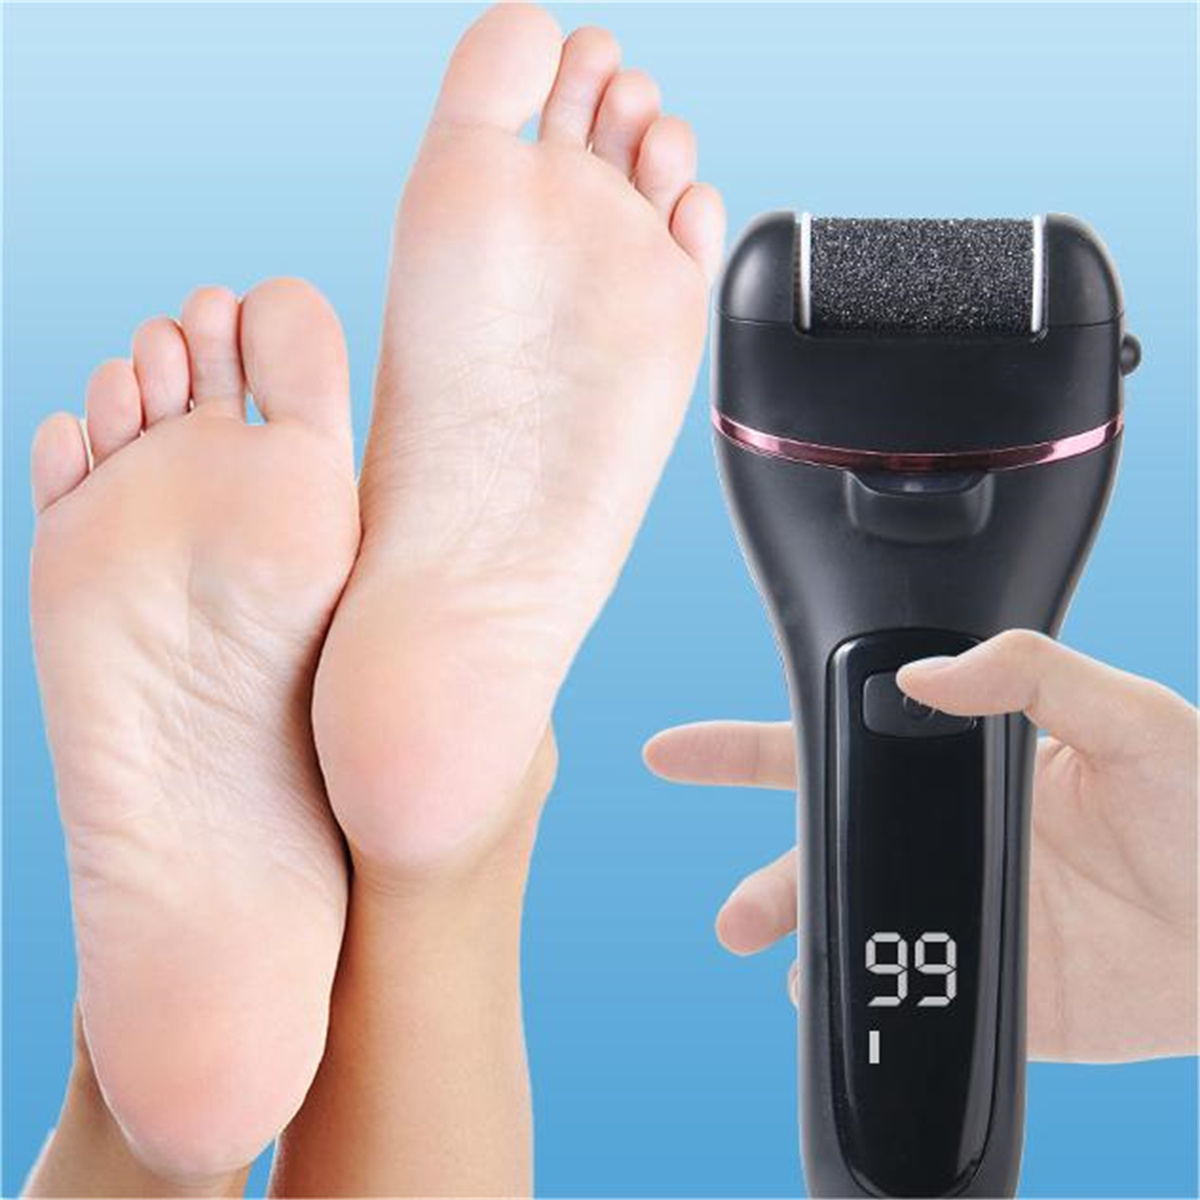 LACAMAX Fußschleifer Schwarz Digital Display Fußschleifer Aufladen Set Waschen Hornhautentferner Schwarz Wasser Elektrische